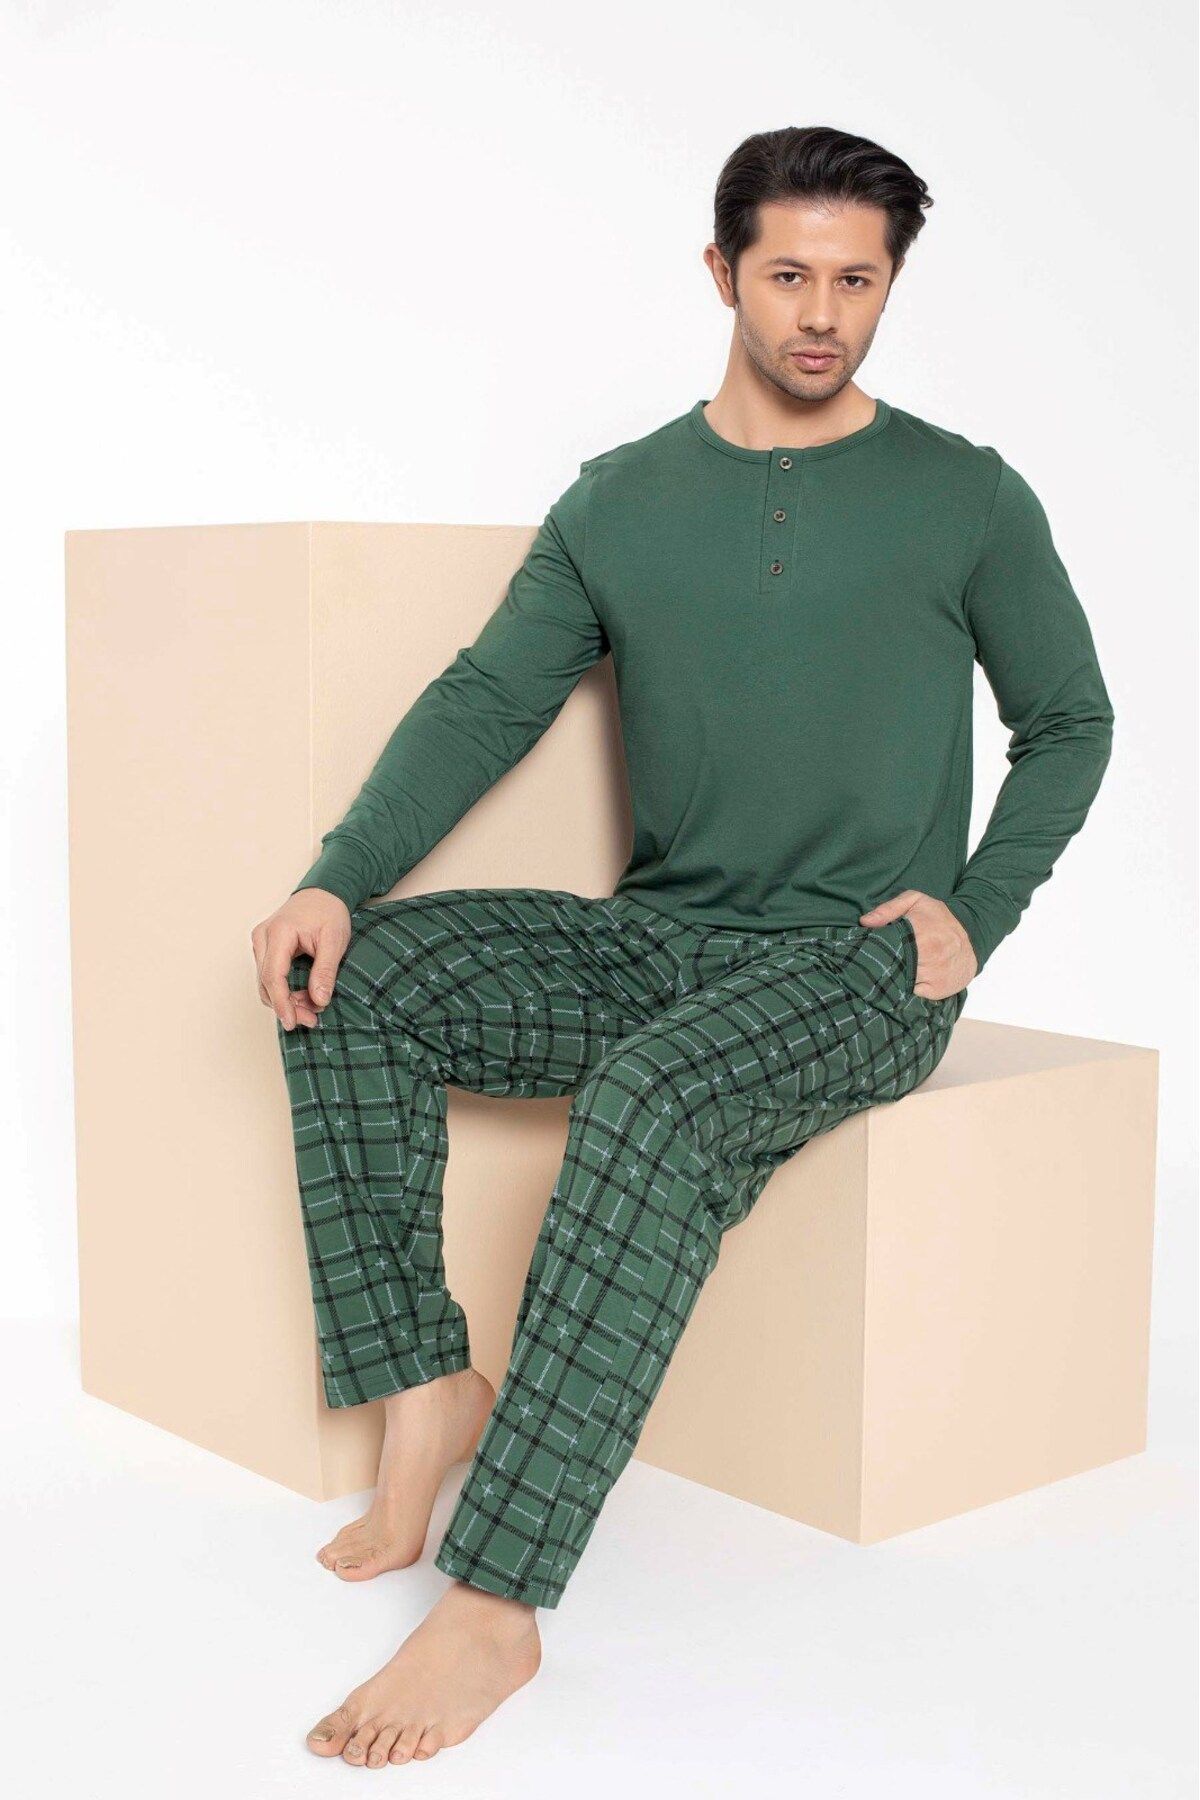 bie's Erkek-çift Sevgili Eş Kombini Yeşil Ekose Desen Modal Uzun Kol Pijama Takımı-tek Ürün Fiyatıdır-